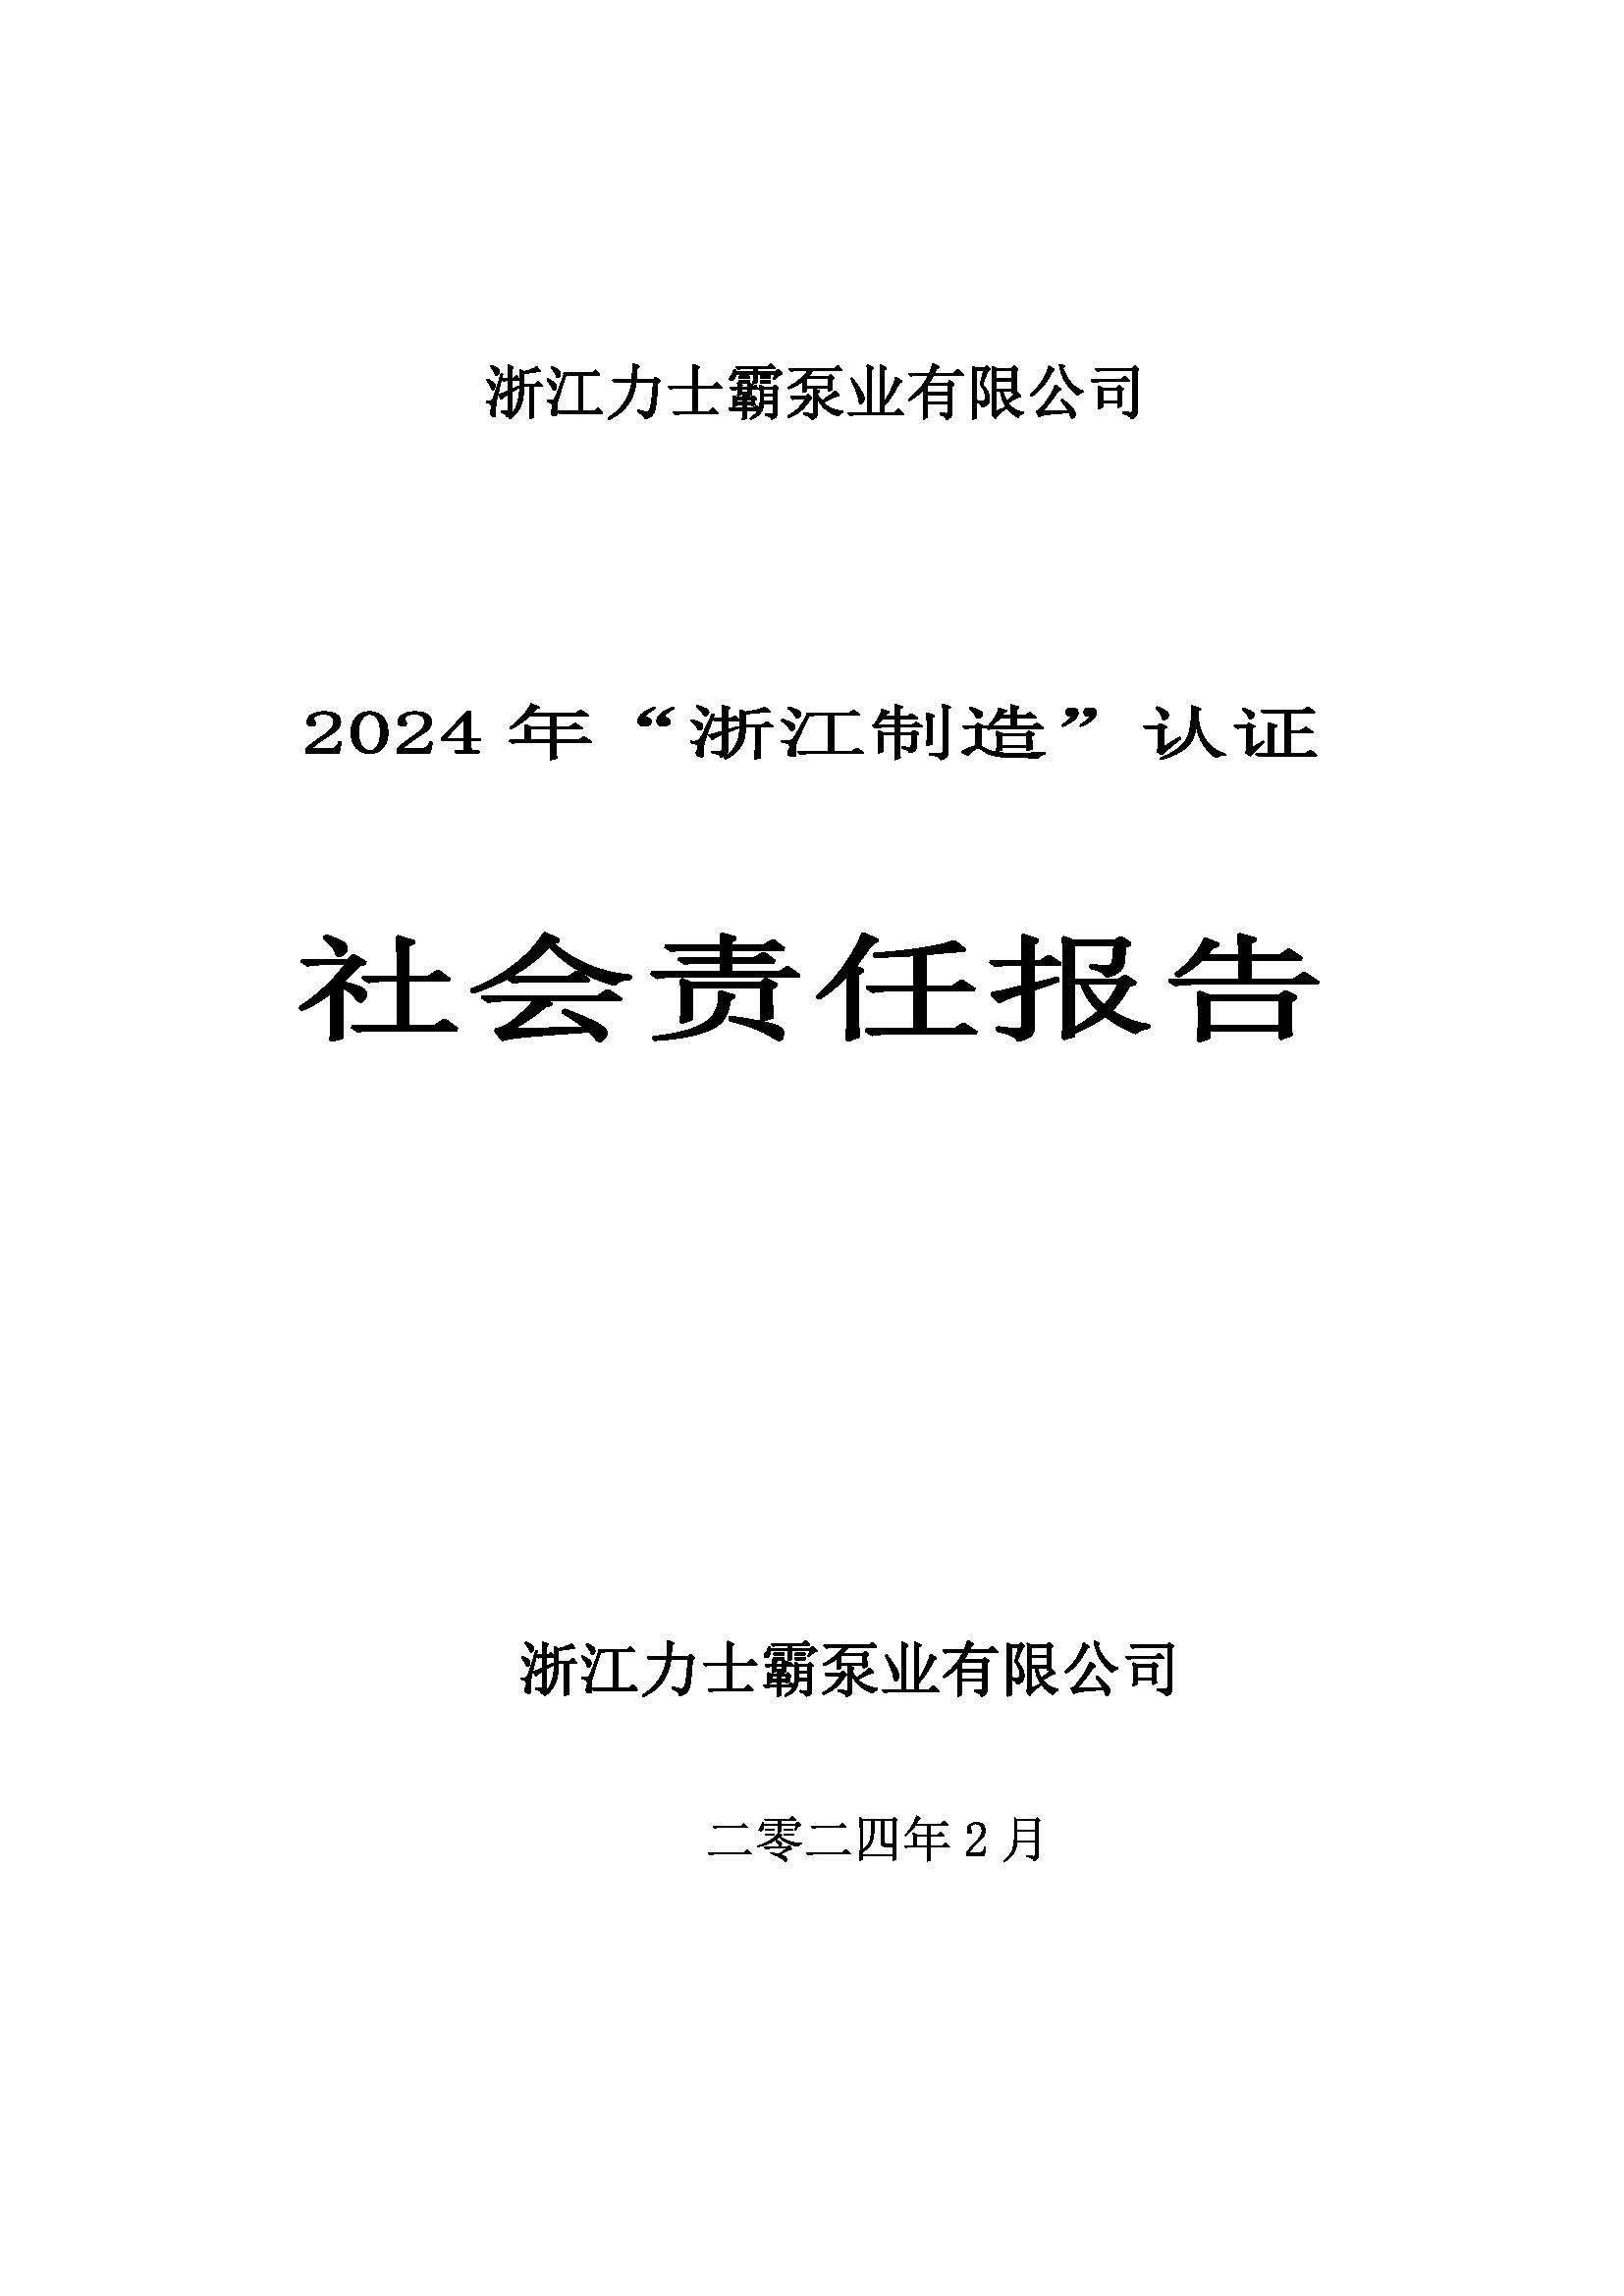 社会责任报告-浙江力士霸泵业有限公司2024年“浙江制造”认证(图1)